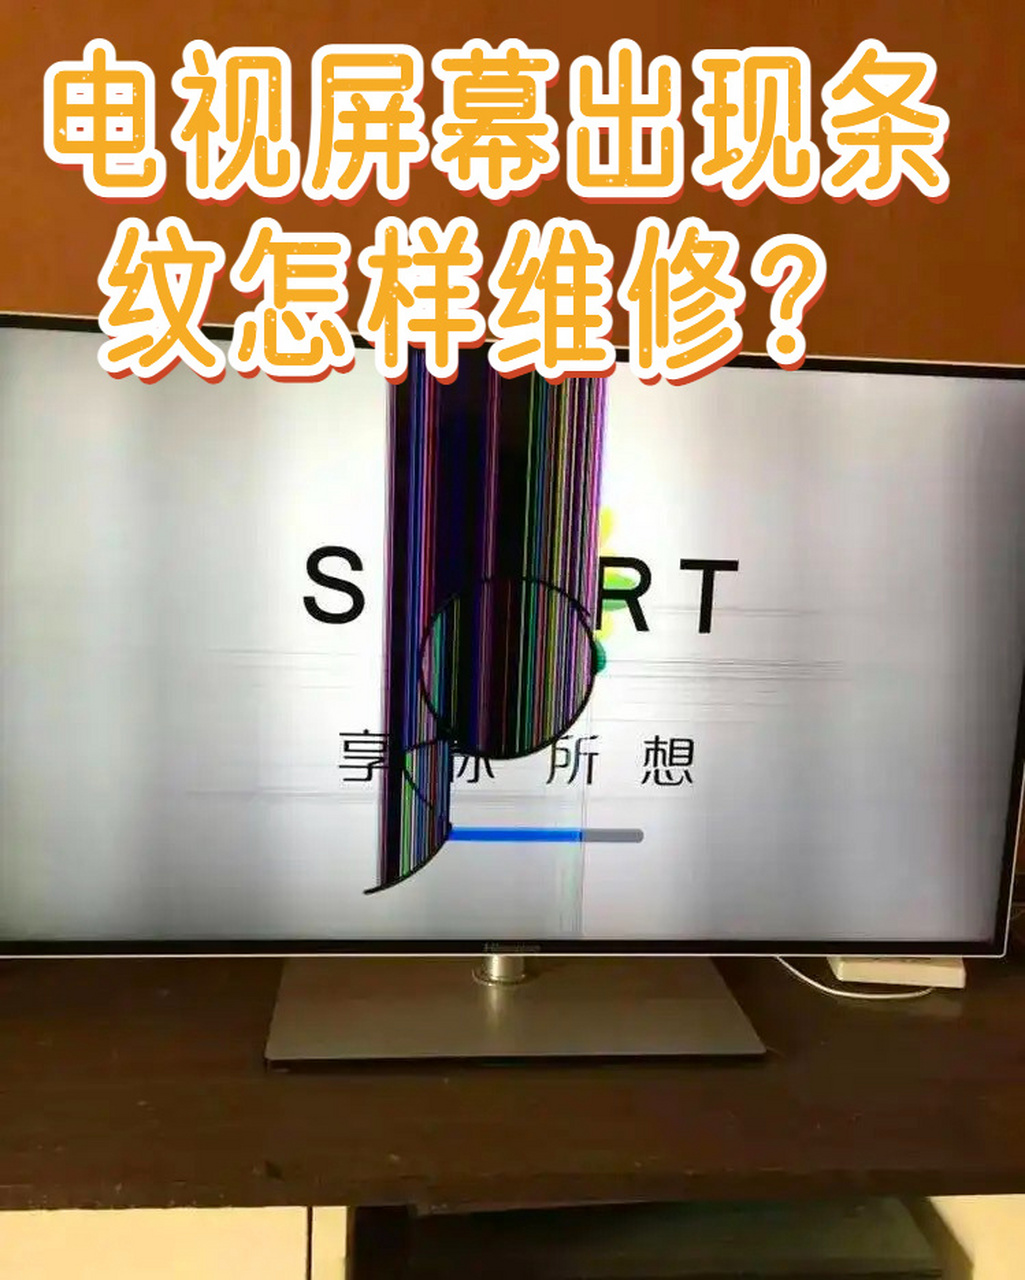 液晶电视屏幕出现横条纹怎样维修?